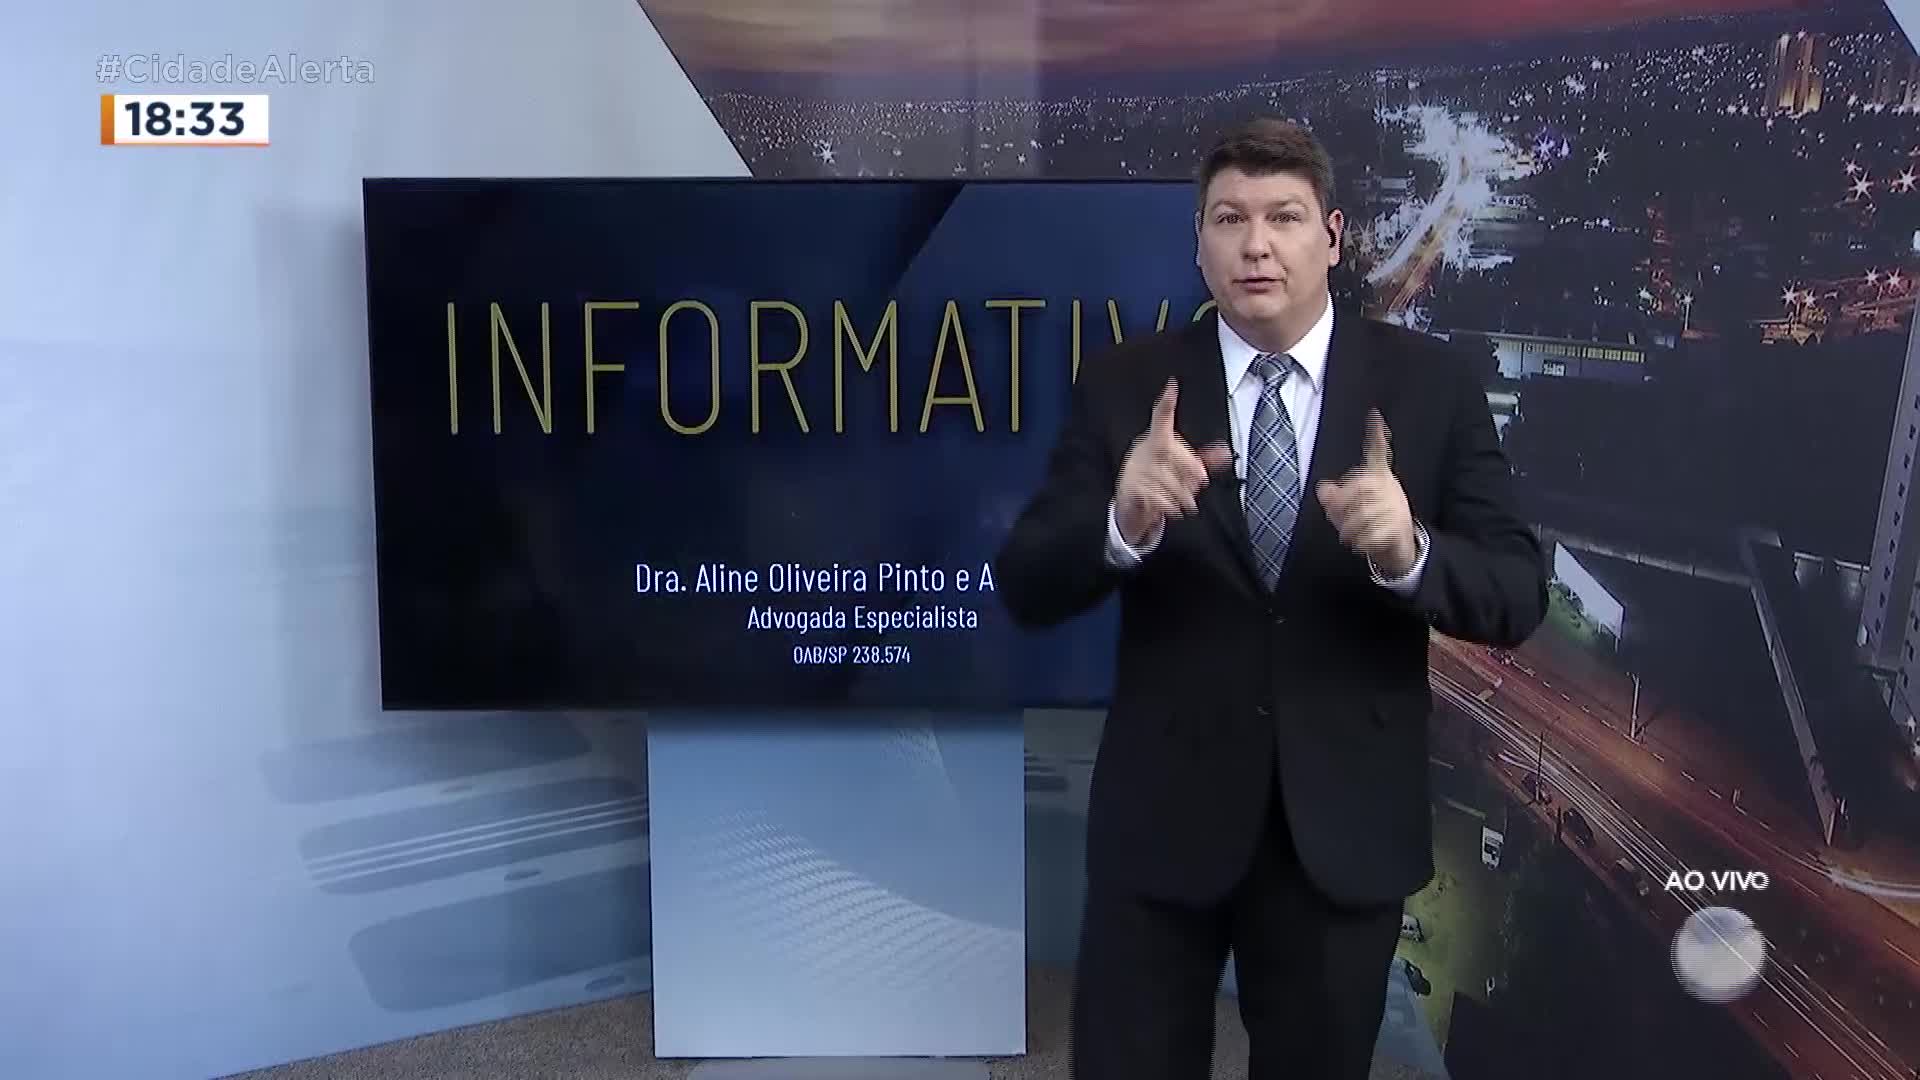 Vídeo: Informativo Dra. Aline - Cidade Alerta Interior - Exibido em 14/04/2022